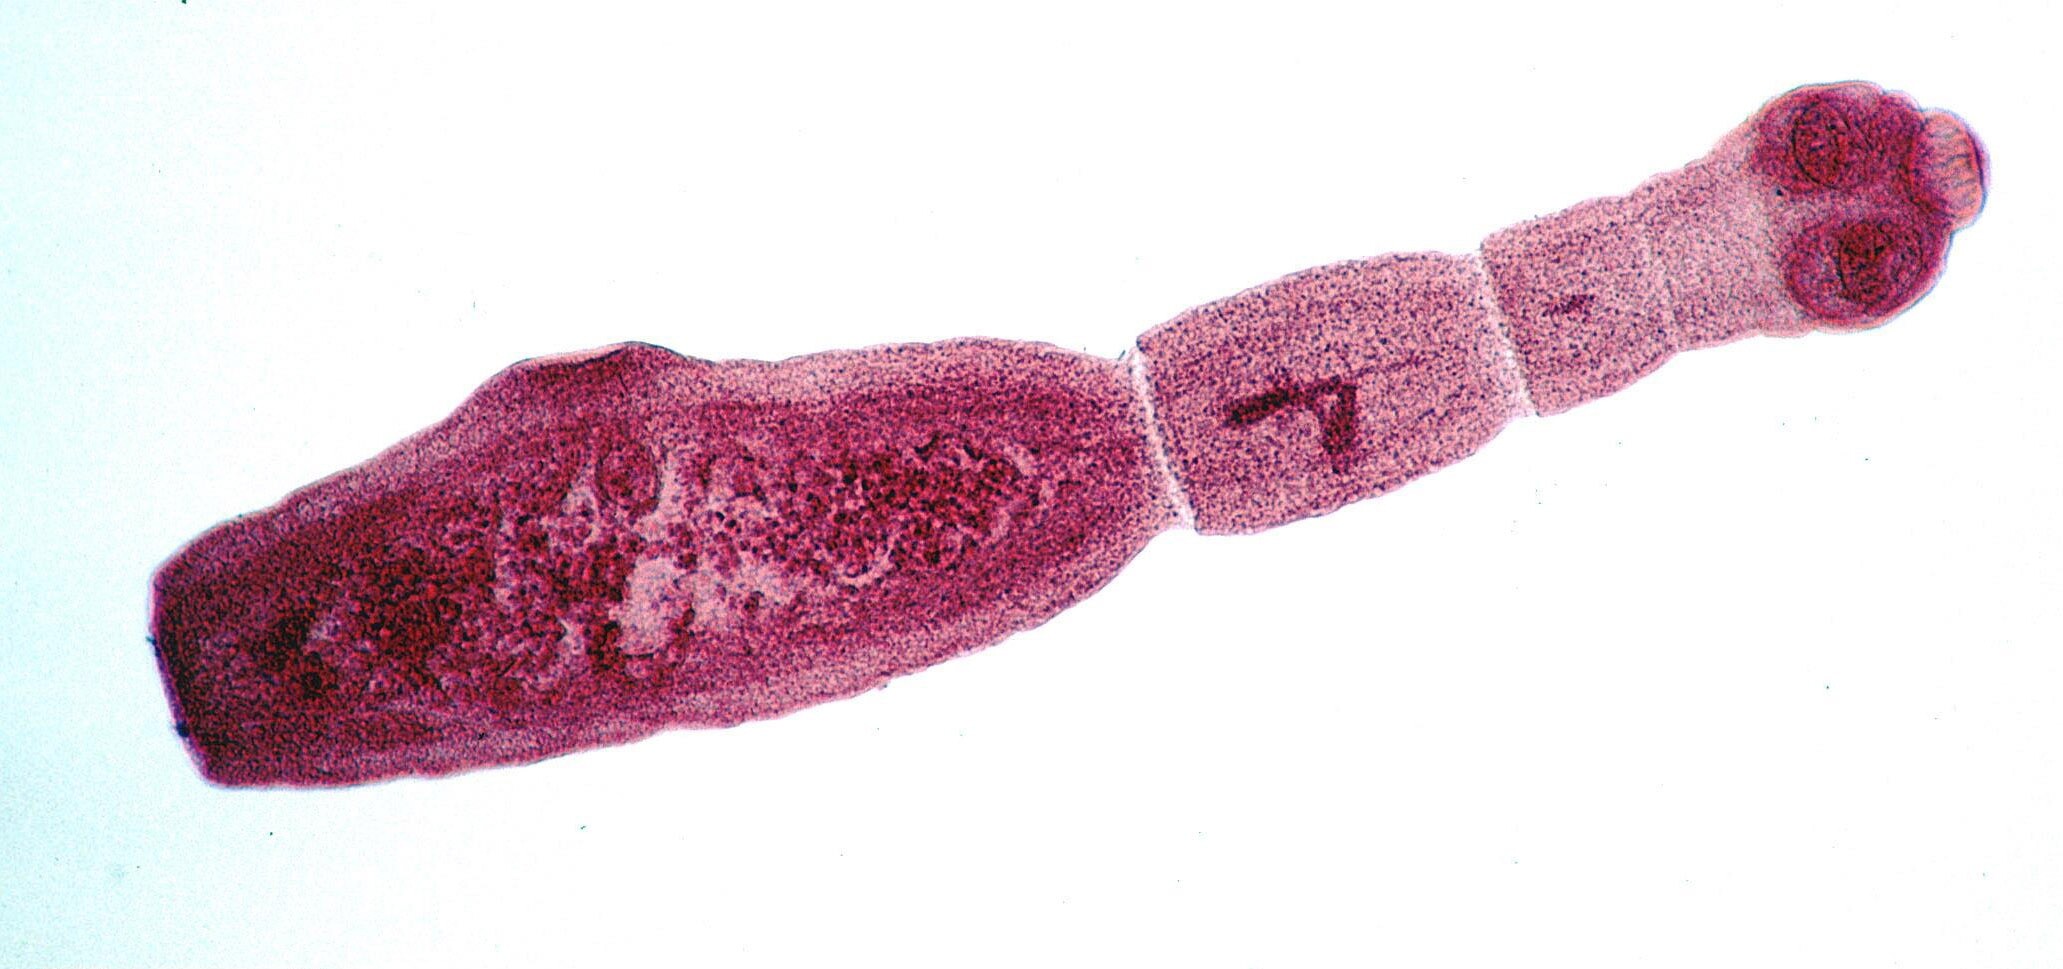 Echinococcus Granulosus Kistinin Hidatik Yapısı (Larva Dönemi)